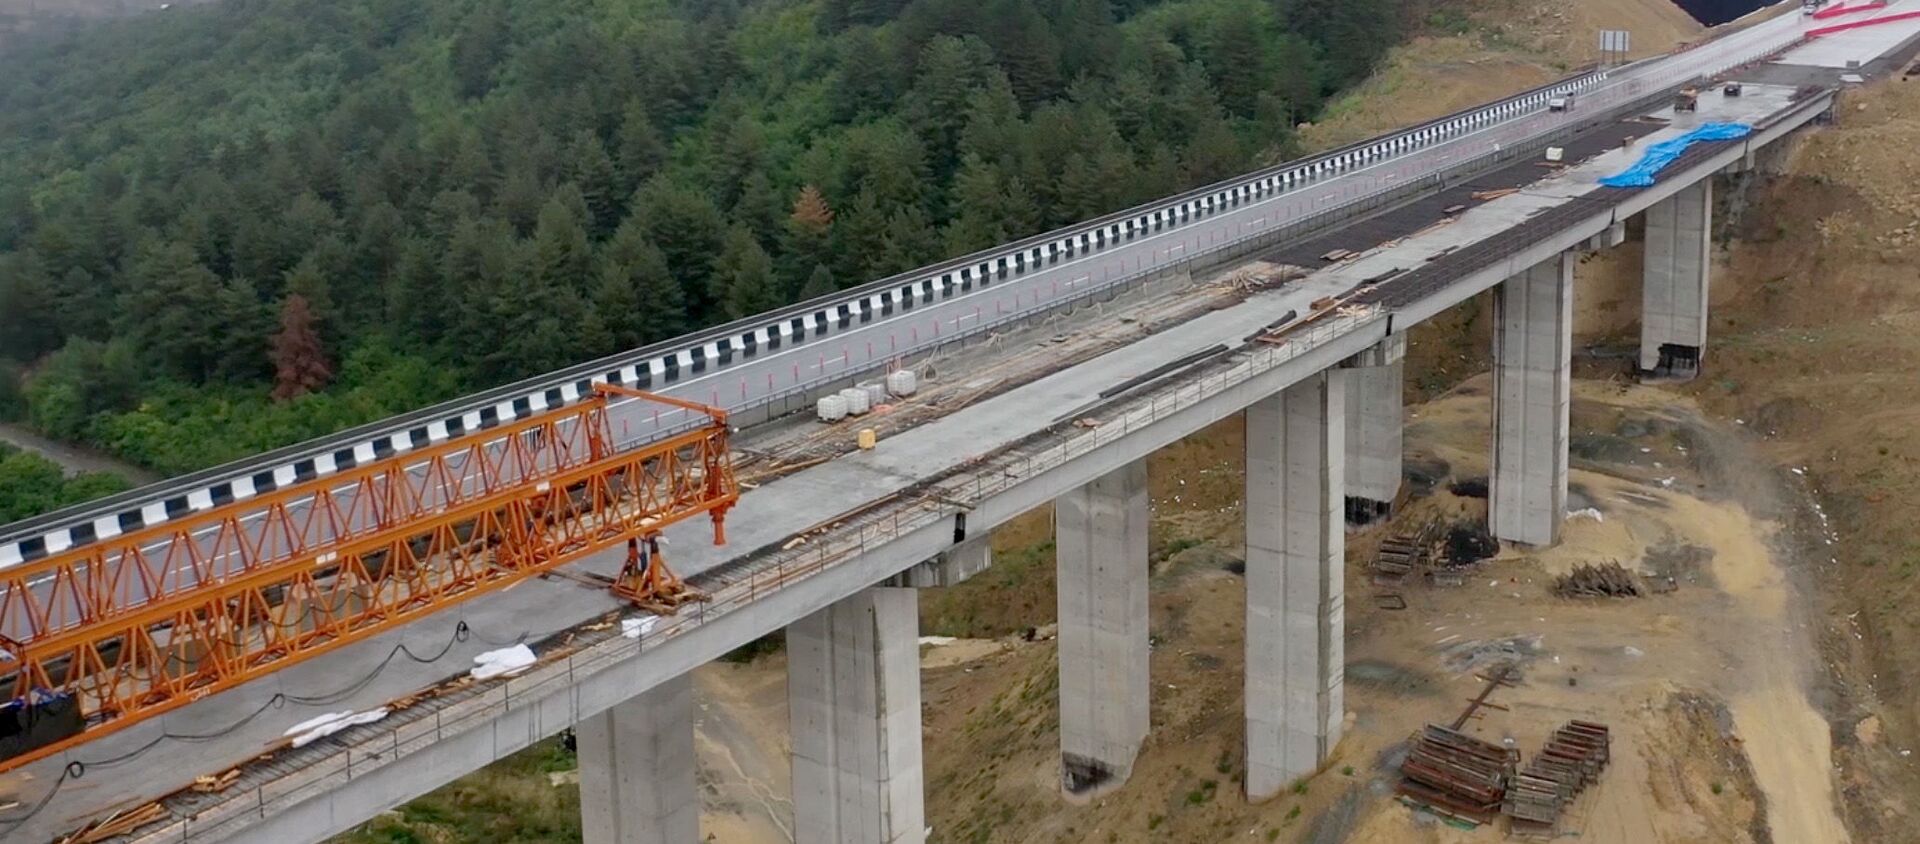 Автобан на трассе Восток - Запад - центральная автомагистраль Грузии - строительство мостов - Sputnik Грузия, 1920, 06.05.2021